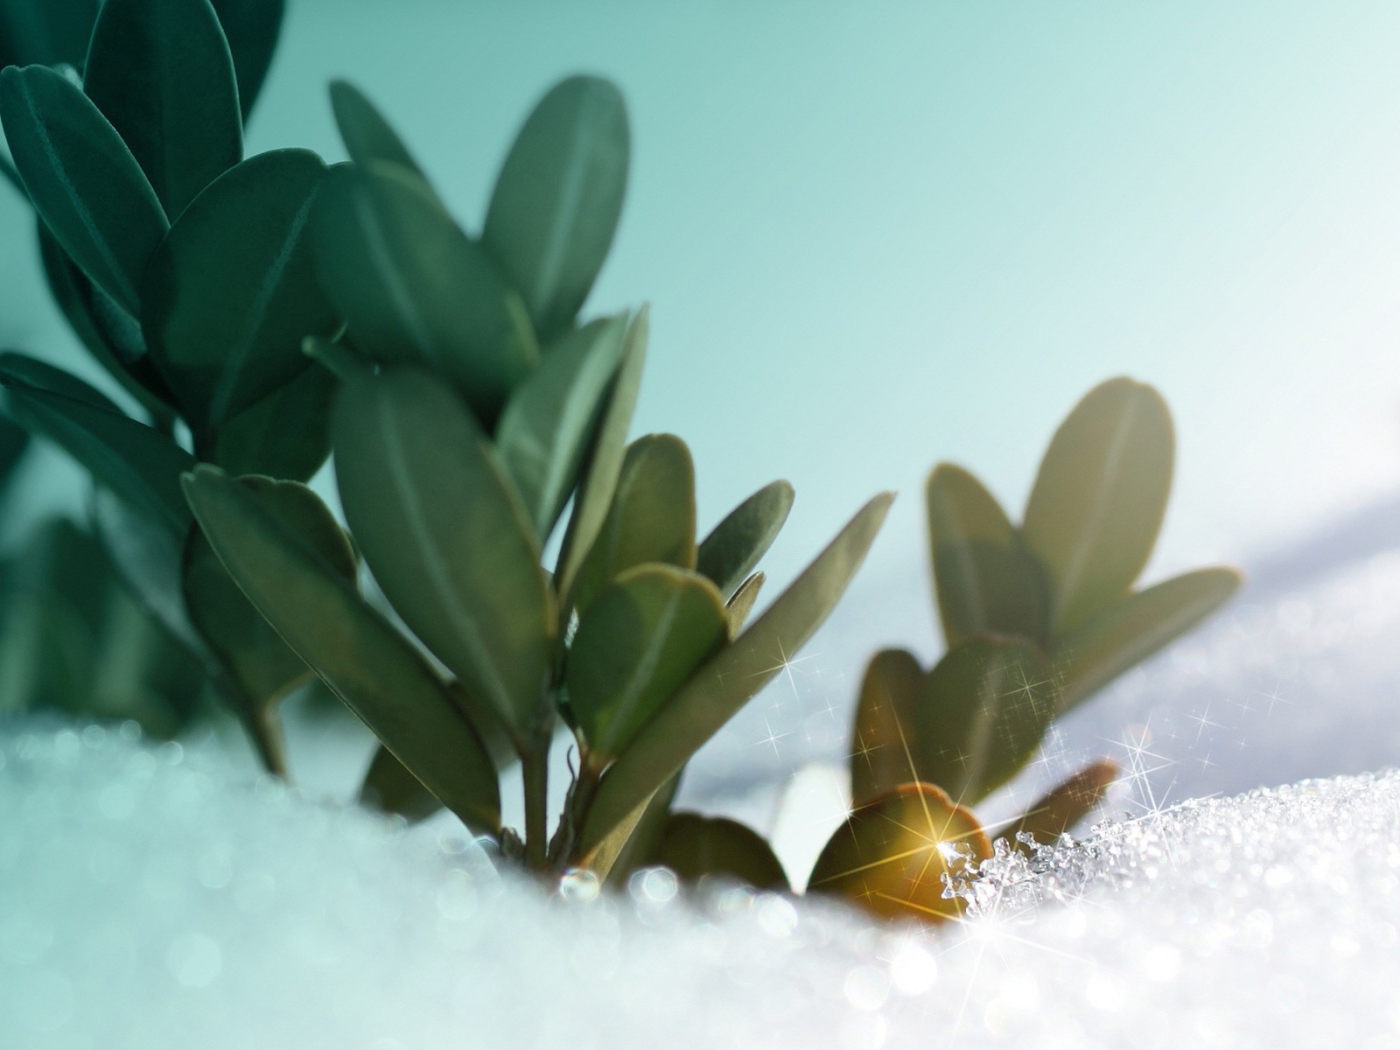 Зеленые растения под искрящимся снегом